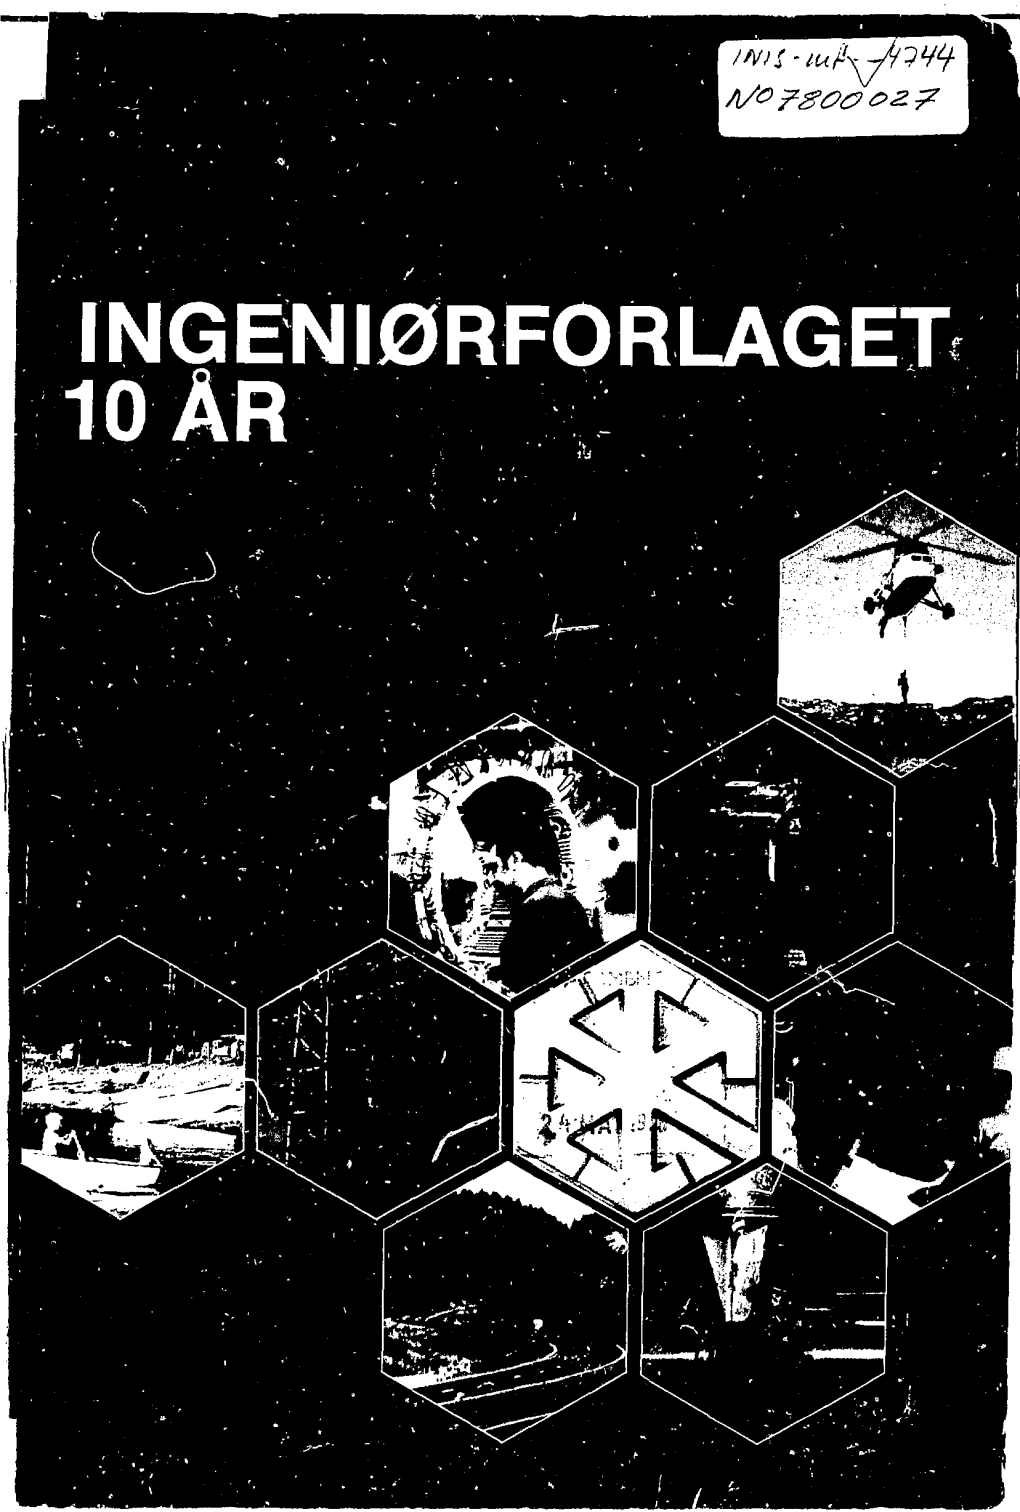 INGENIØRFORLAGET 10 ÅR Åmv